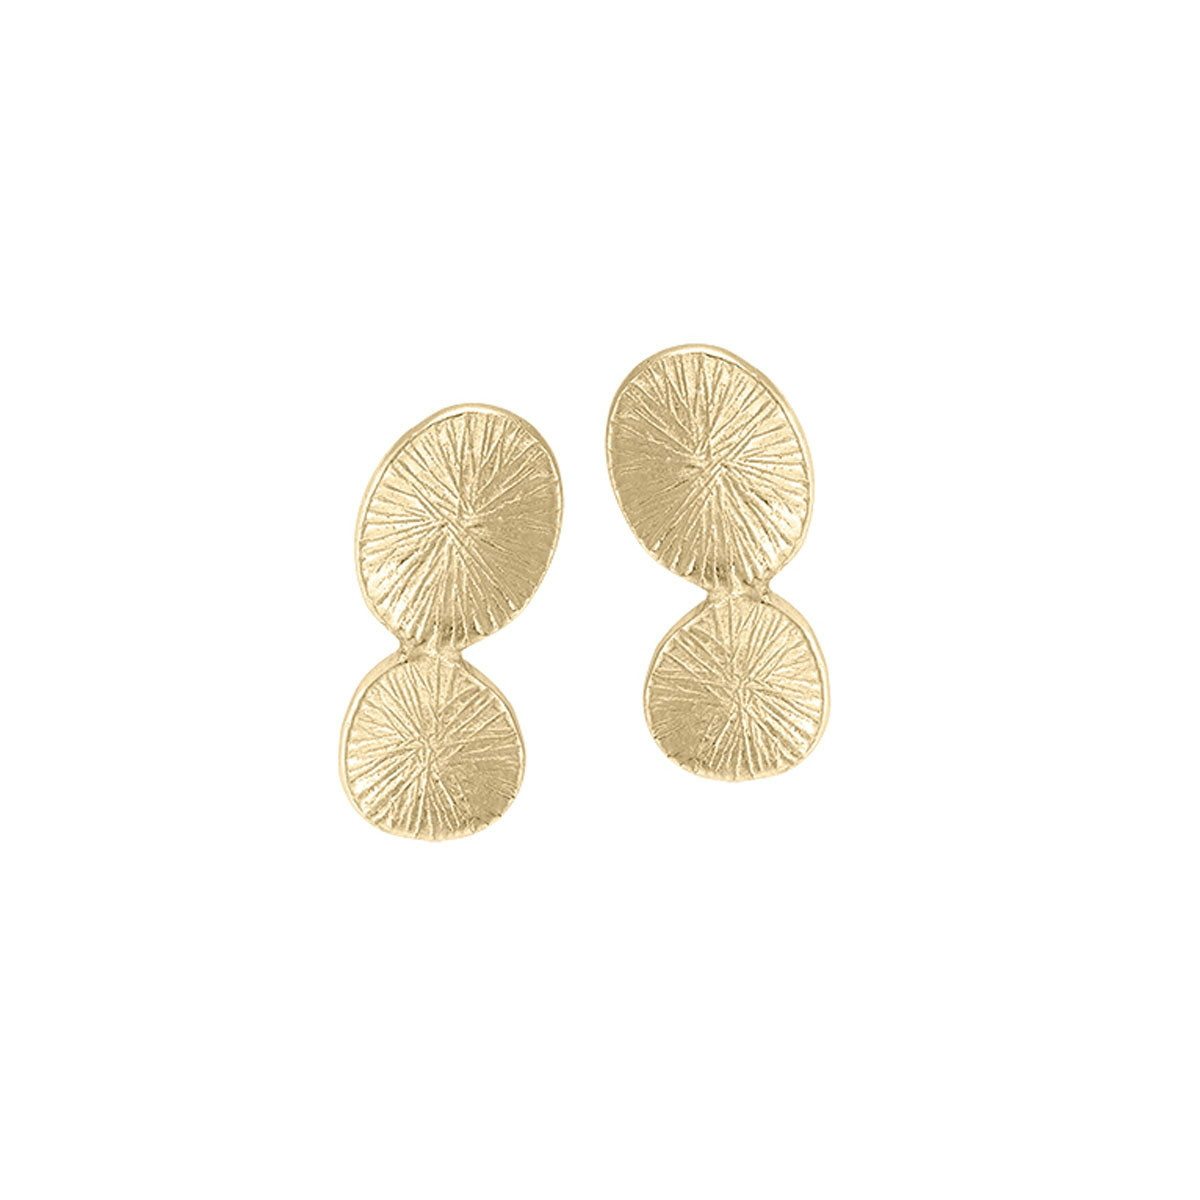 LILY Earrings in Silver. 18k Gold Vermeil